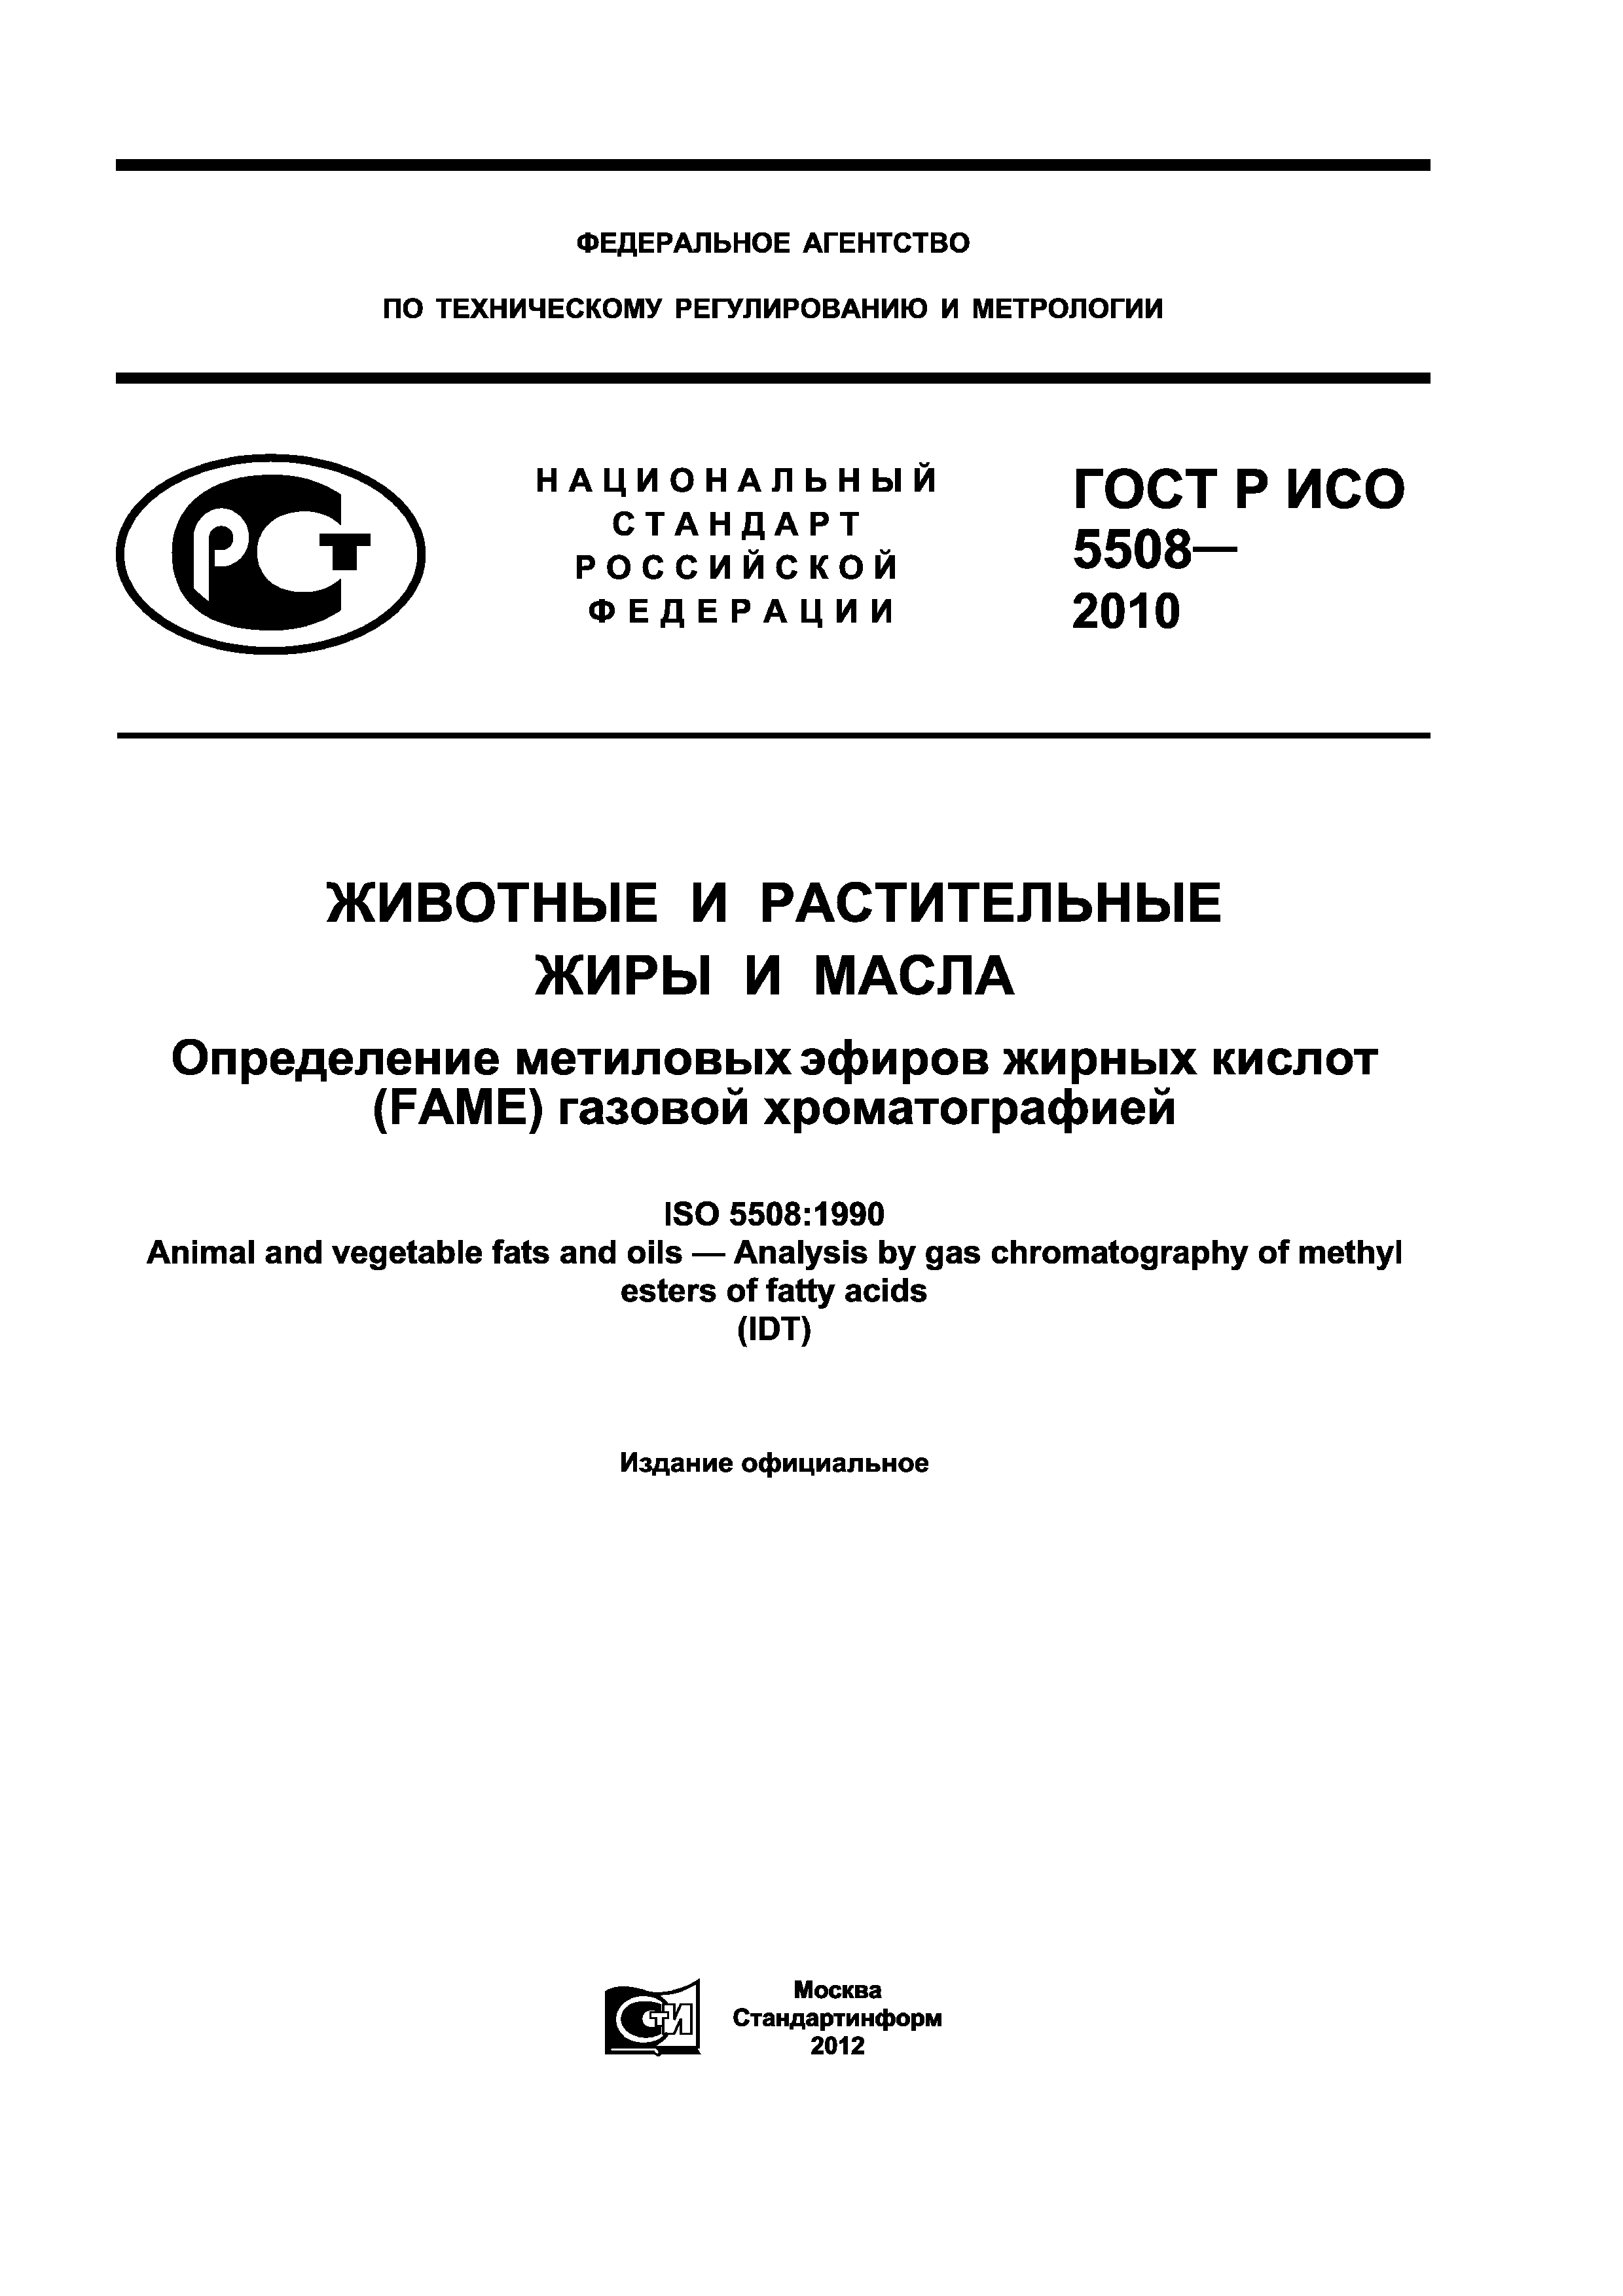 ГОСТ Р ИСО 5508-2010